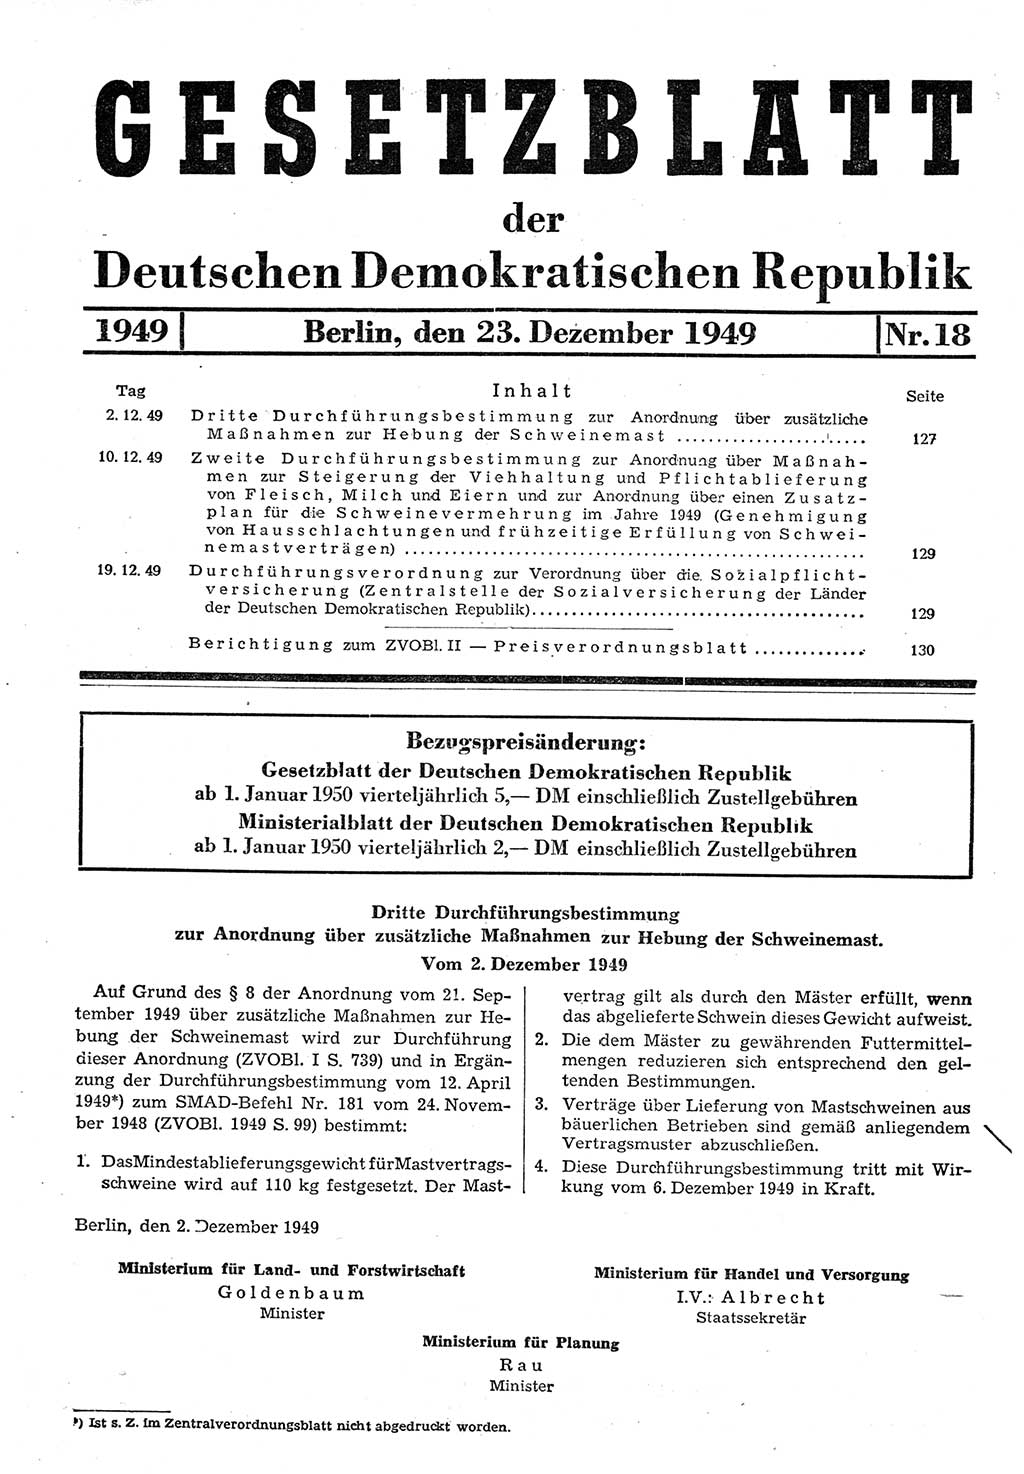 Gesetzblatt (GBl.) der Deutschen Demokratischen Republik (DDR) 1949, Seite 127 (GBl. DDR 1949, S. 127)